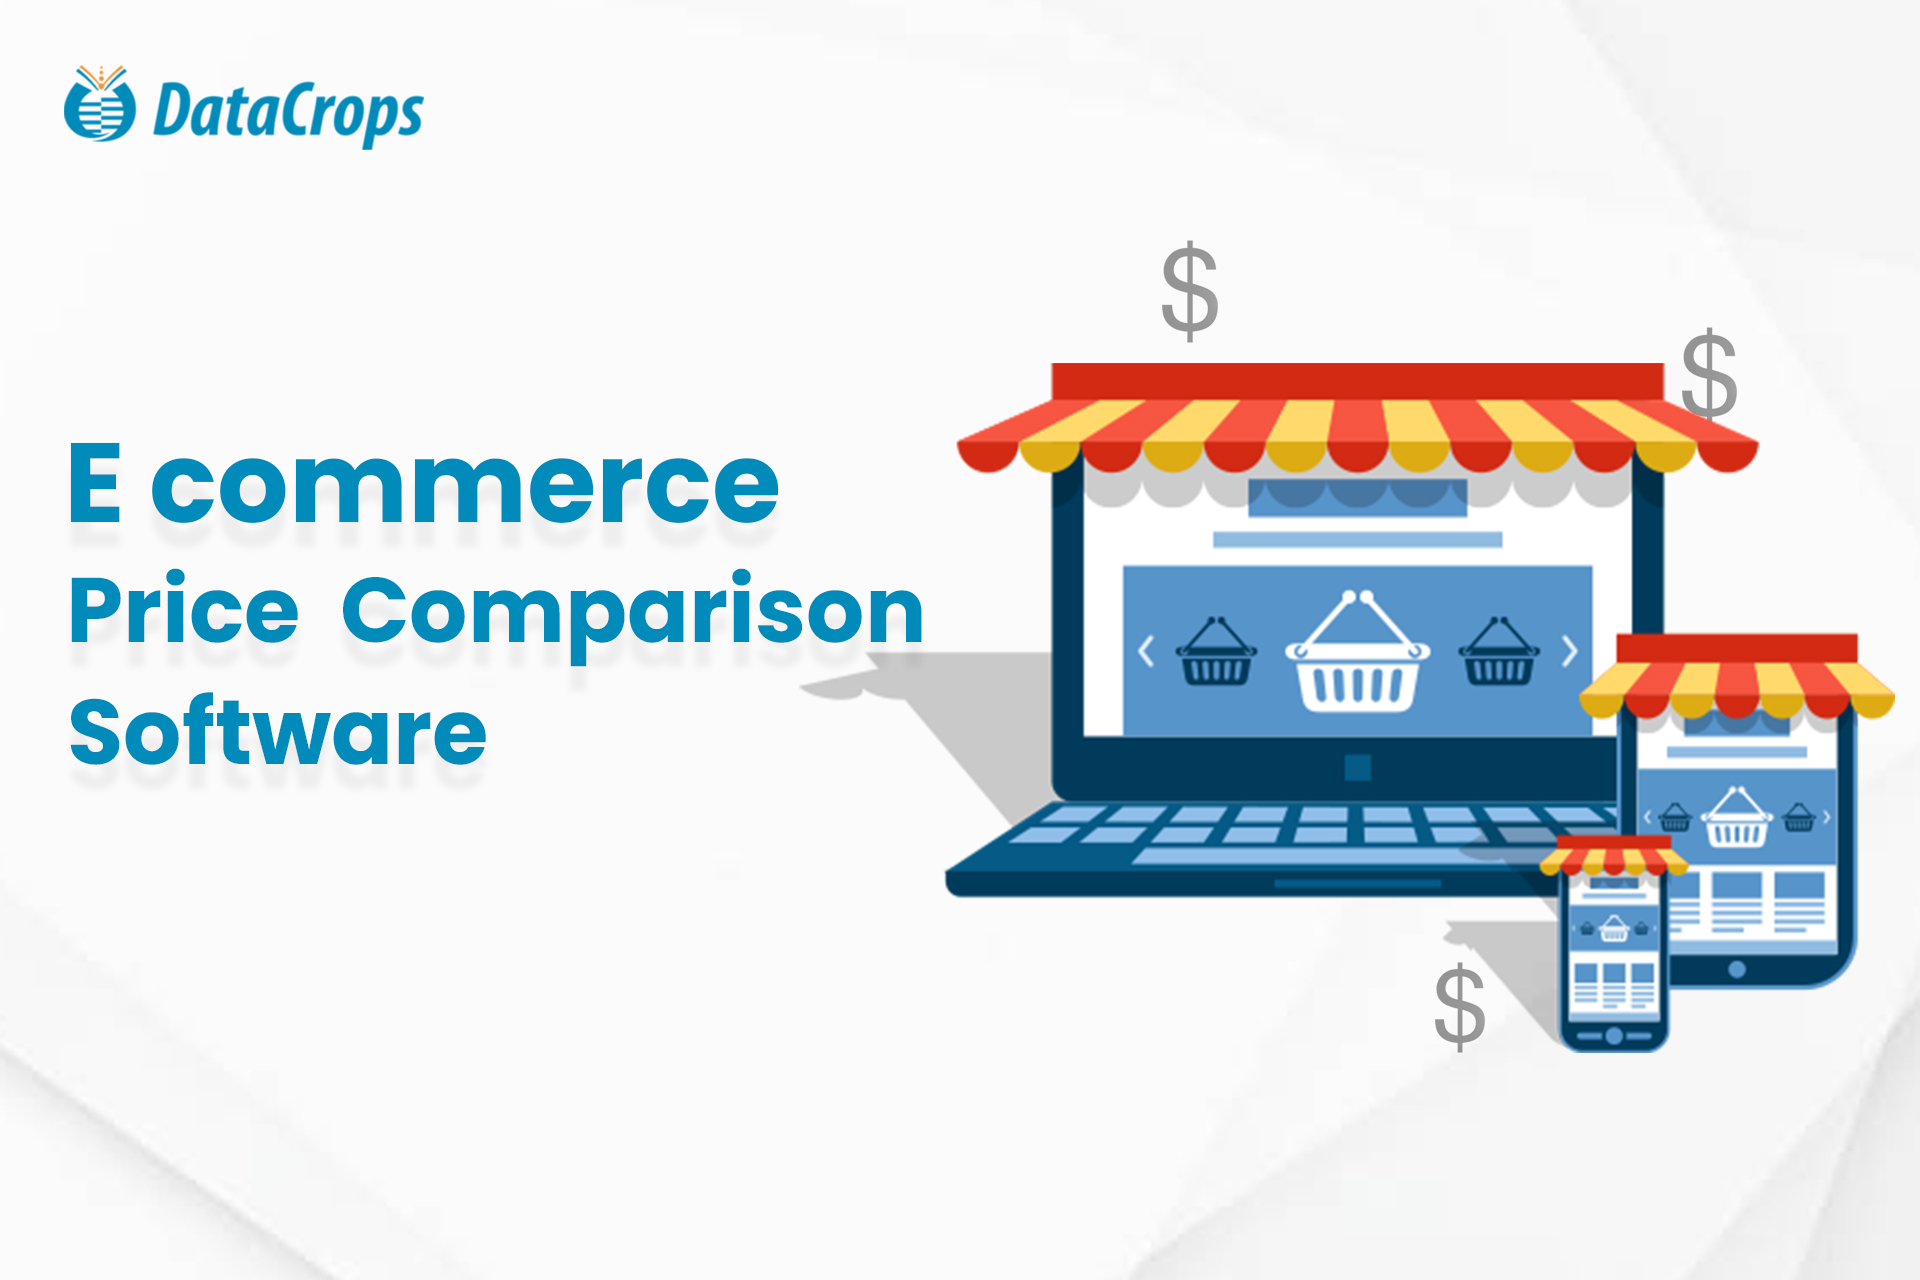 E commerce Price Comparison Software
